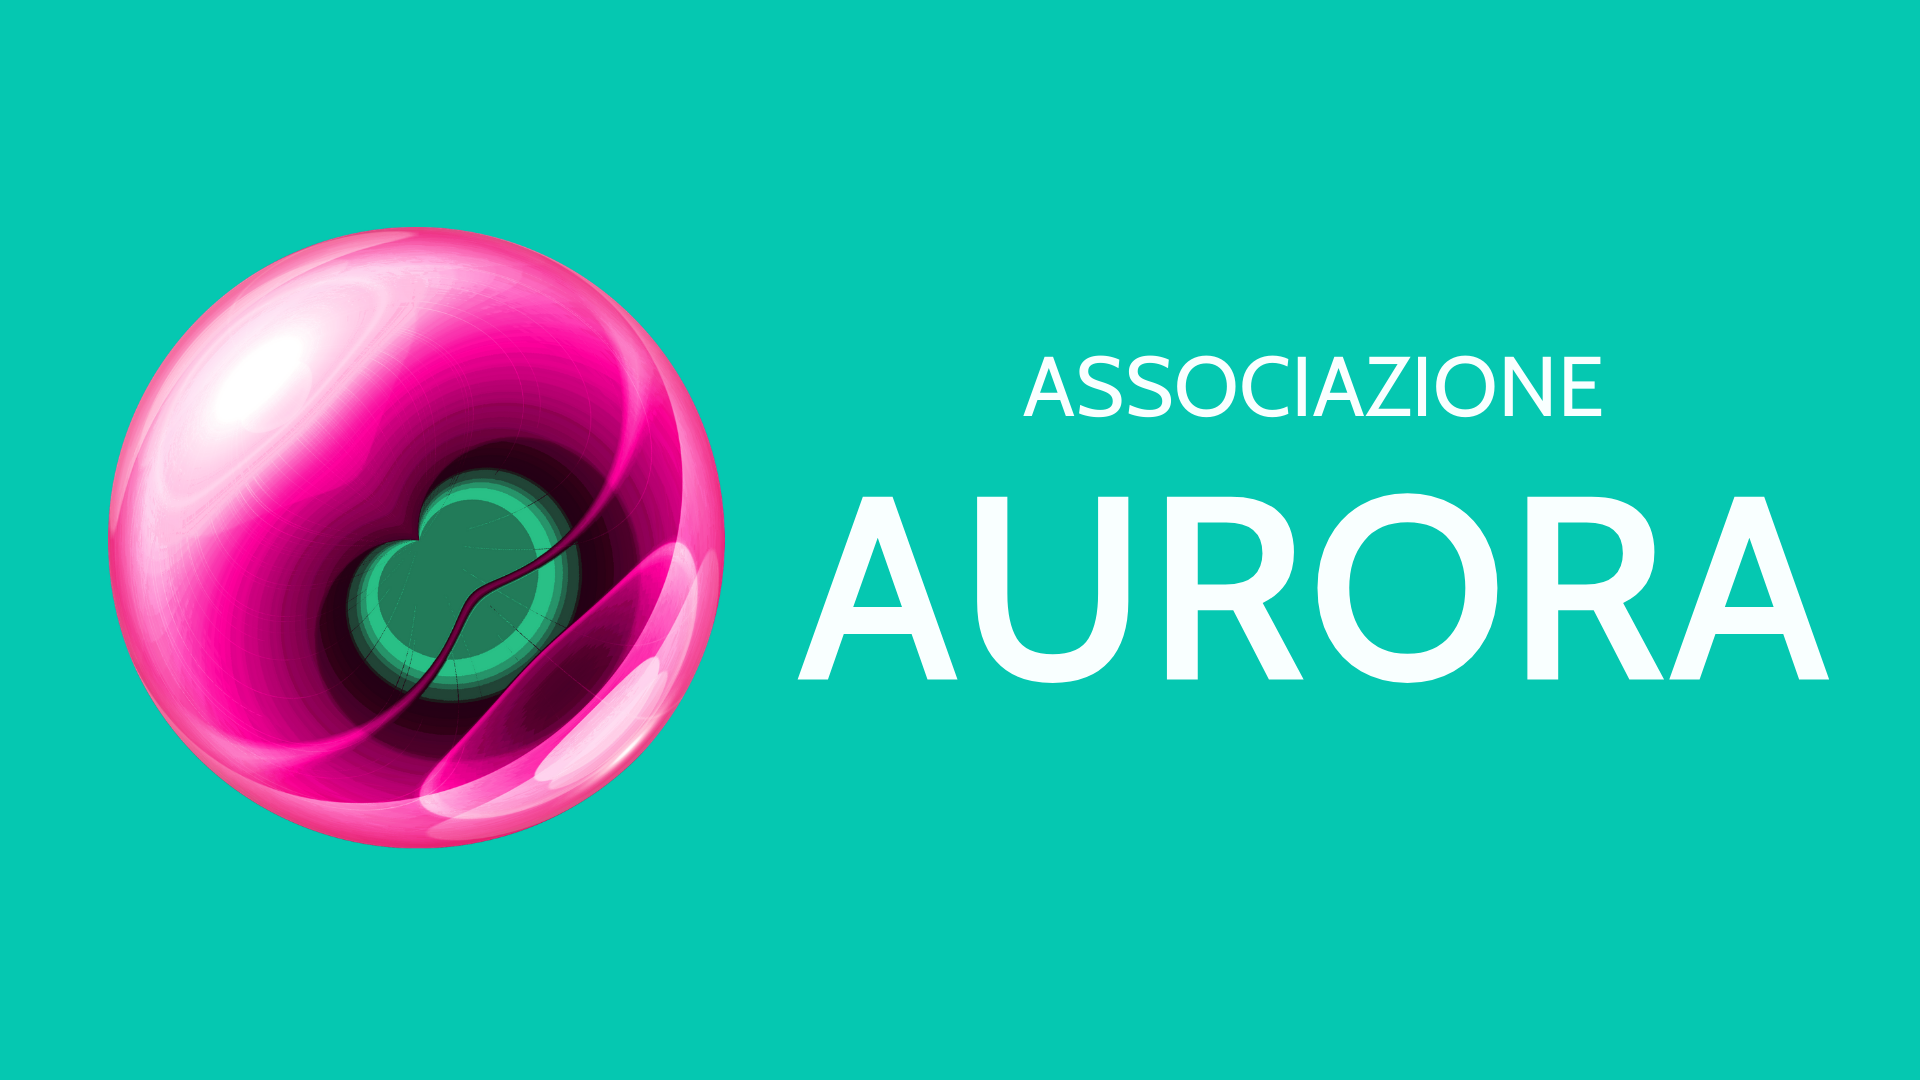 Profumi di fiori di bosco-Associazione Aurora Sociale a 360°